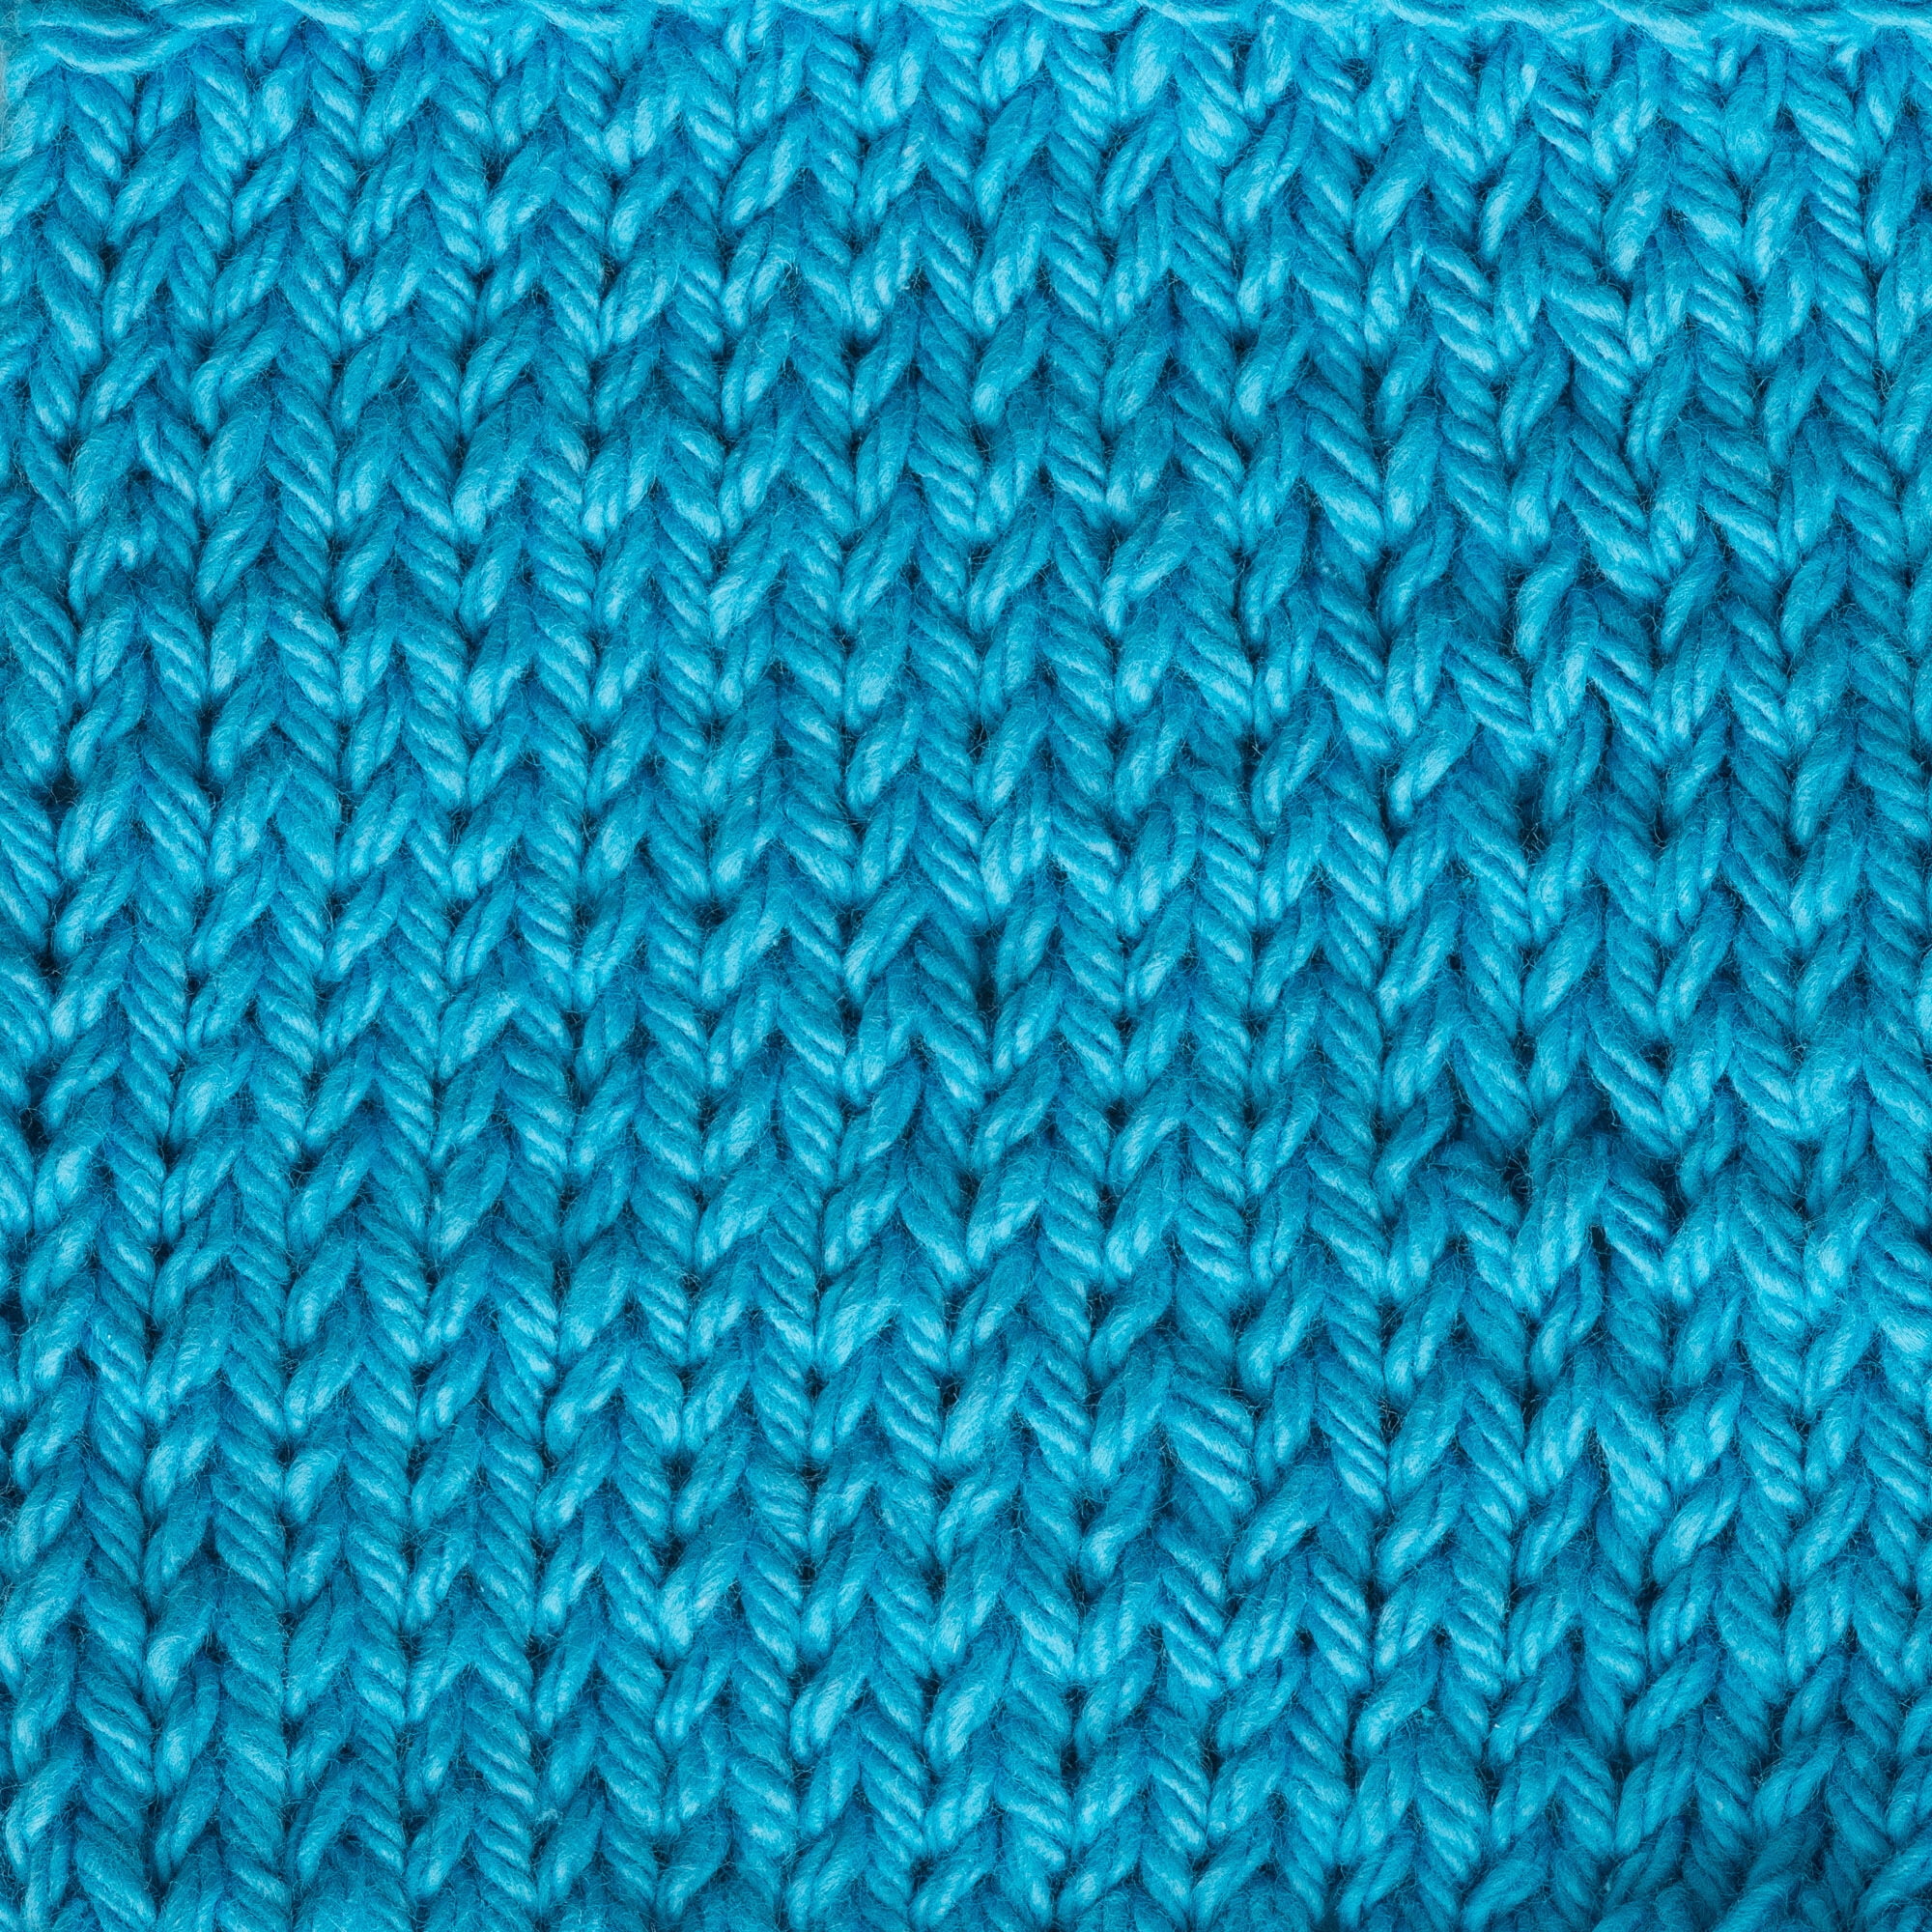 Lily Sugar 'n Cream Cotton Yarn Light Blue 00026 Crochet Knit Fast